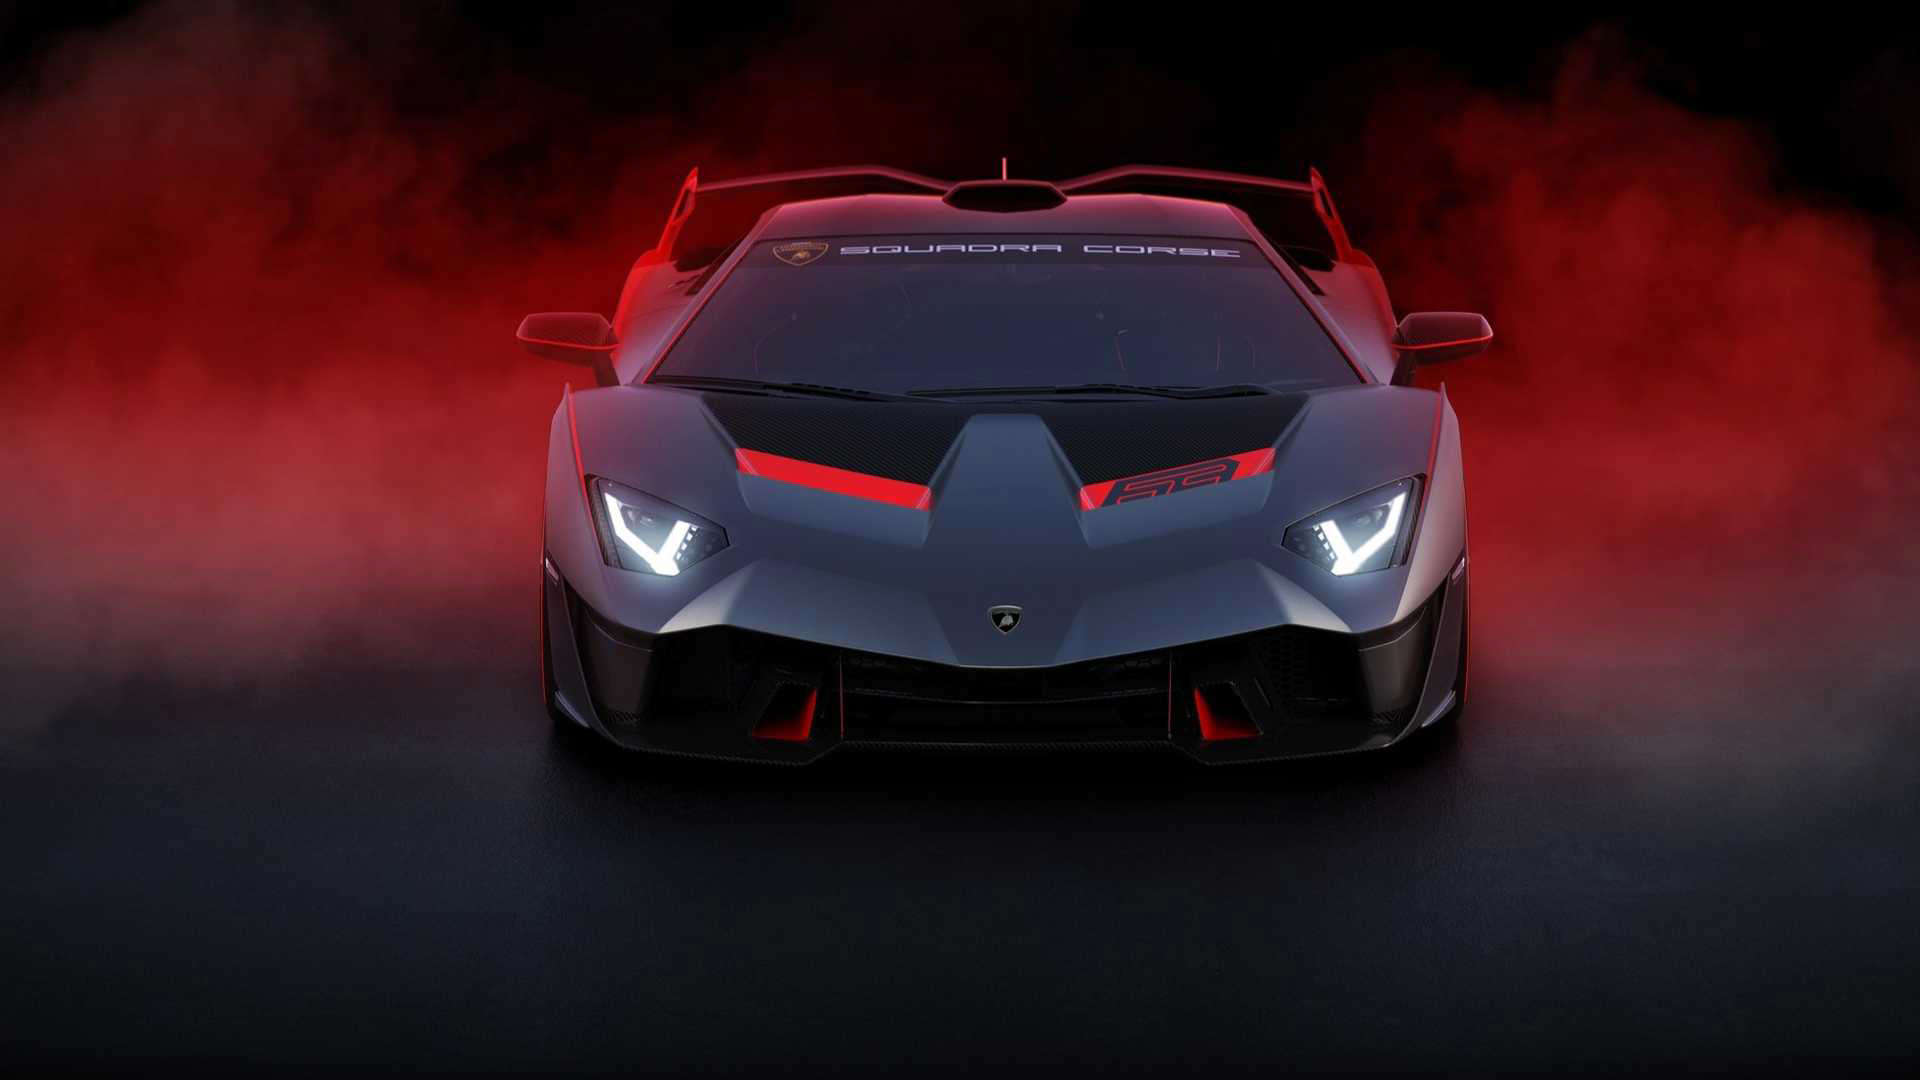 Lamborghini SC18 Is A One-Off Devil Child Of The Aventador